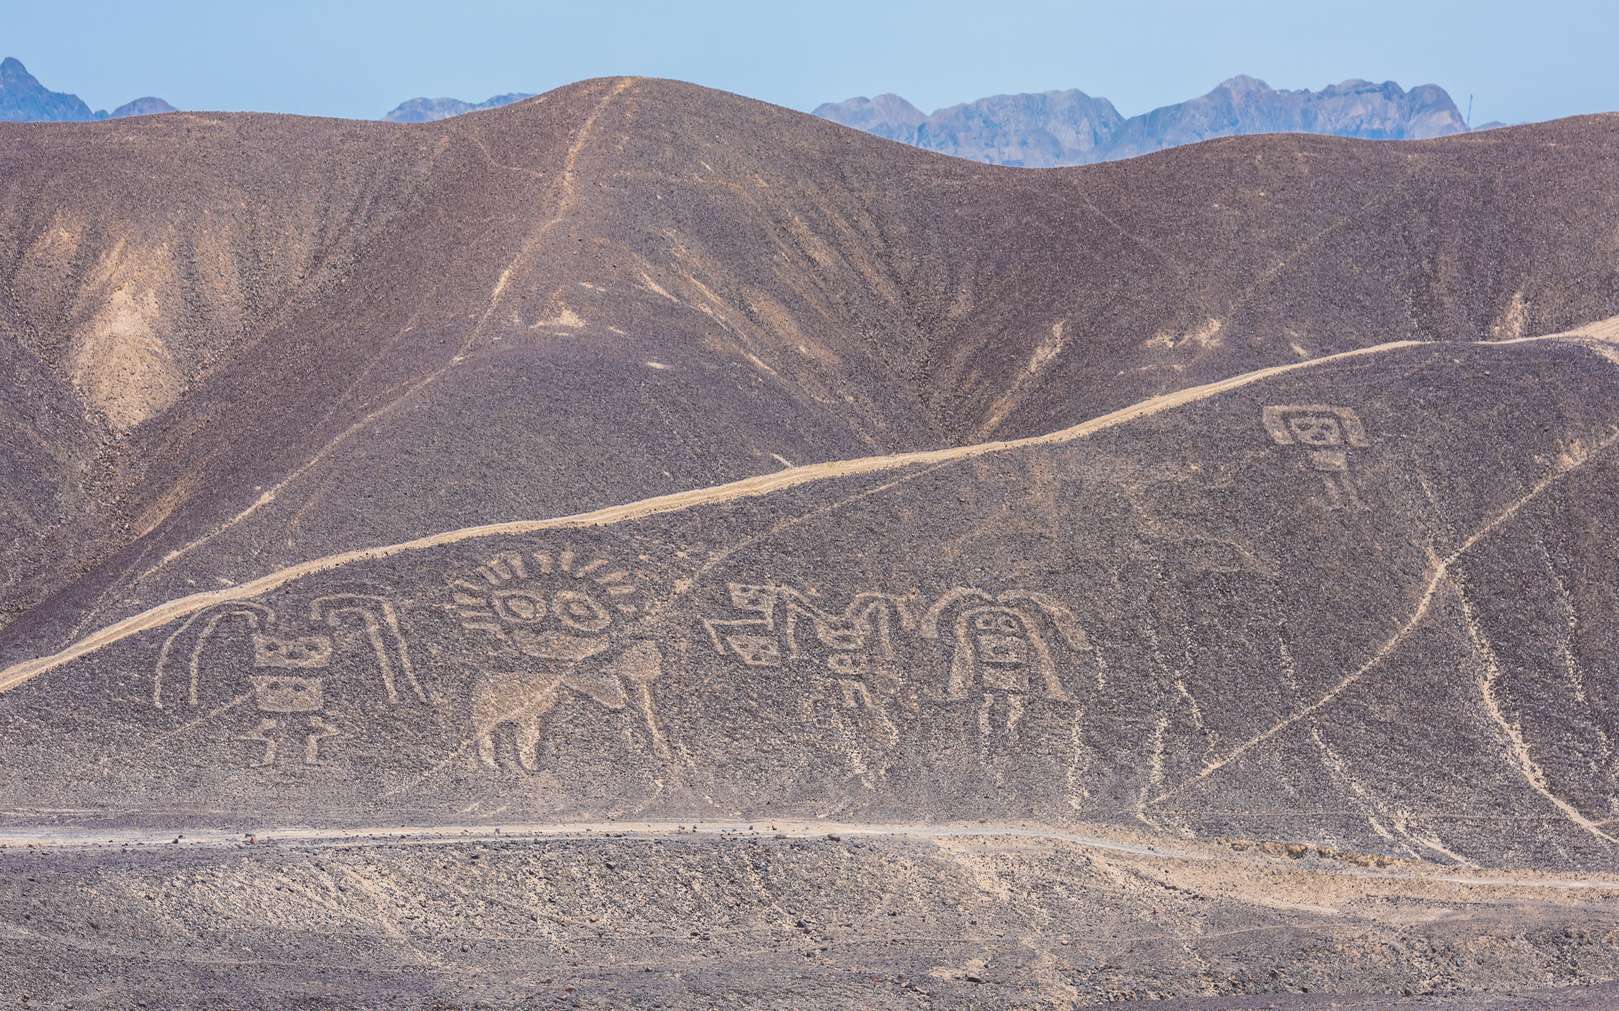 Un chat géant se cachait sur une colline d'où l'on peut voir les lignes de Nazca